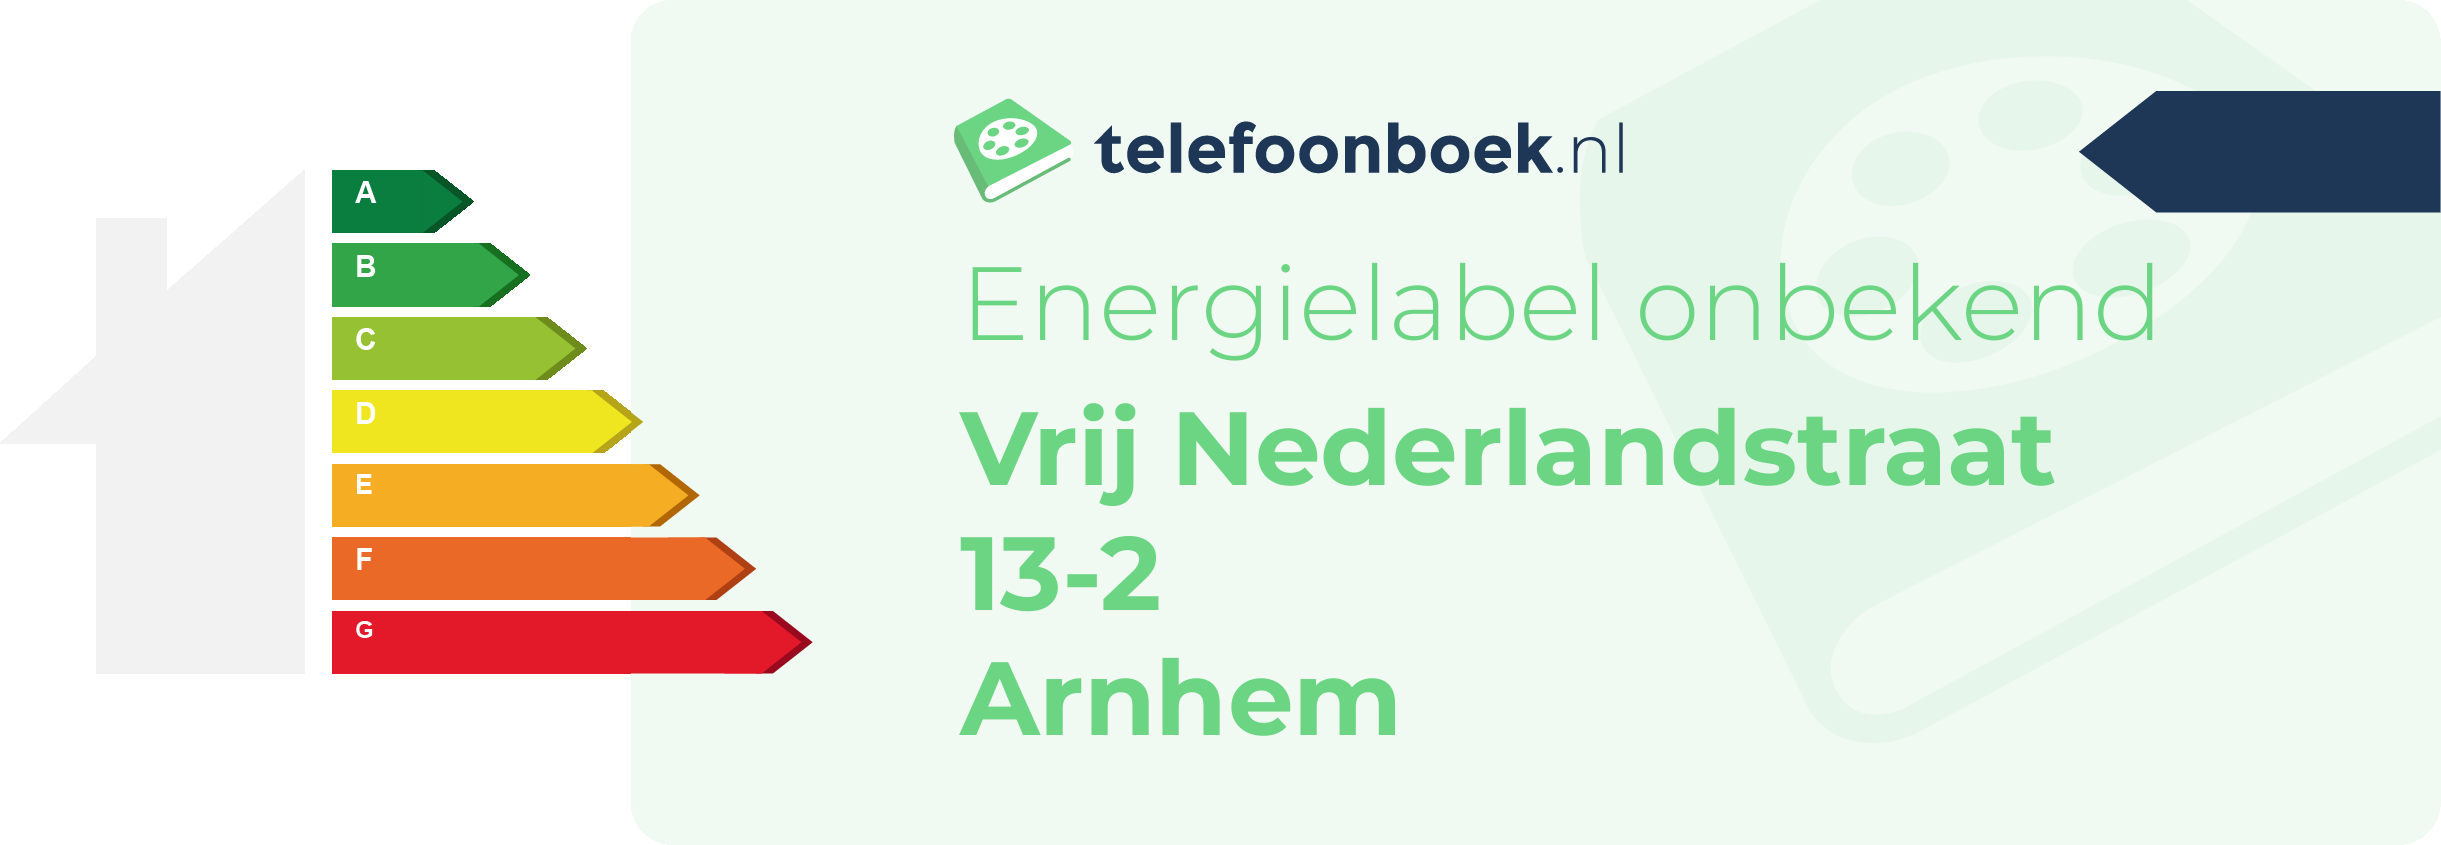 Energielabel Vrij Nederlandstraat 13-2 Arnhem